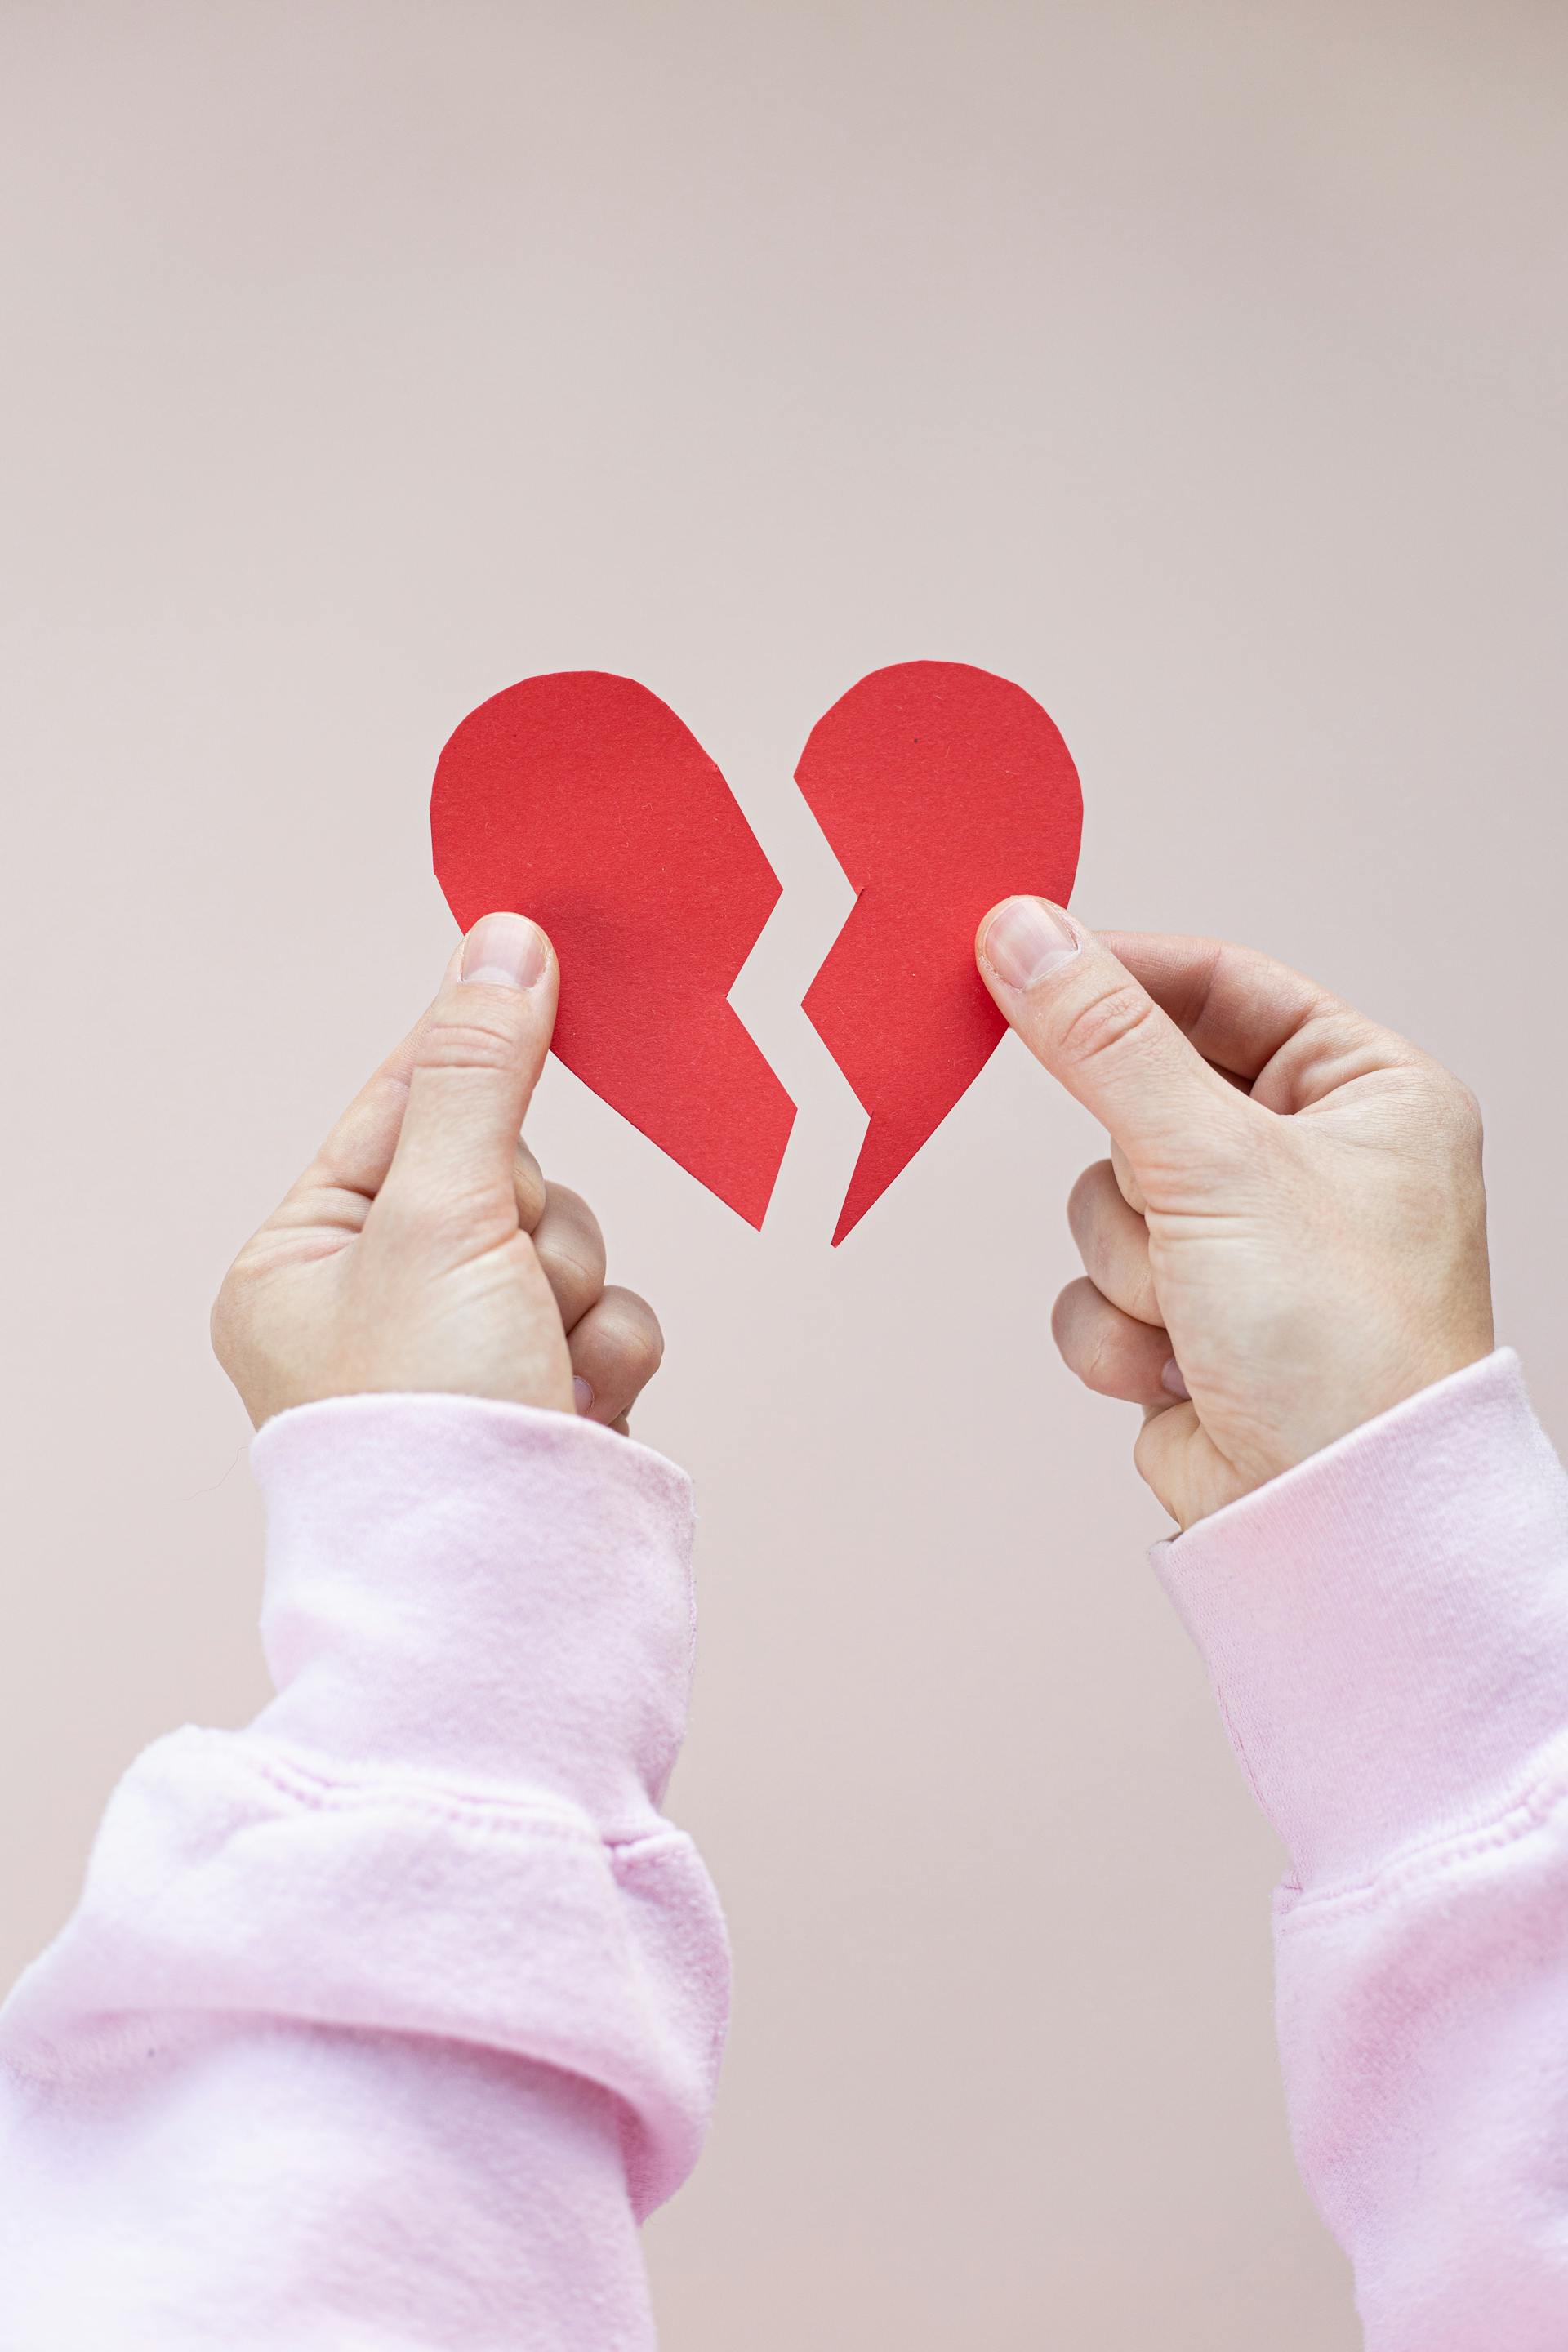 Une personne tenant un cœur en papier rouge brisé | Source : Pexels